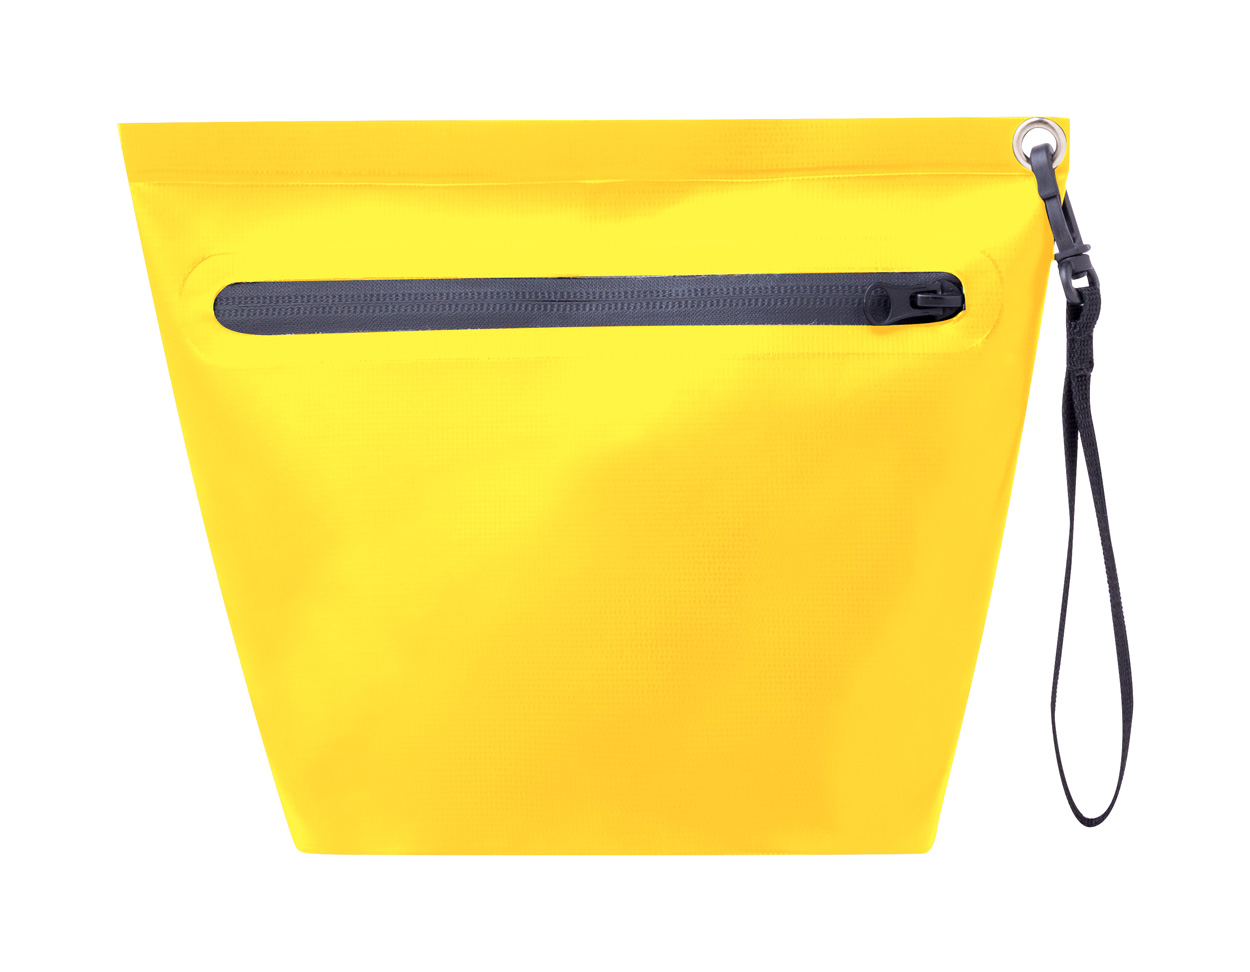 Dalmas multipurpose bag - yellow